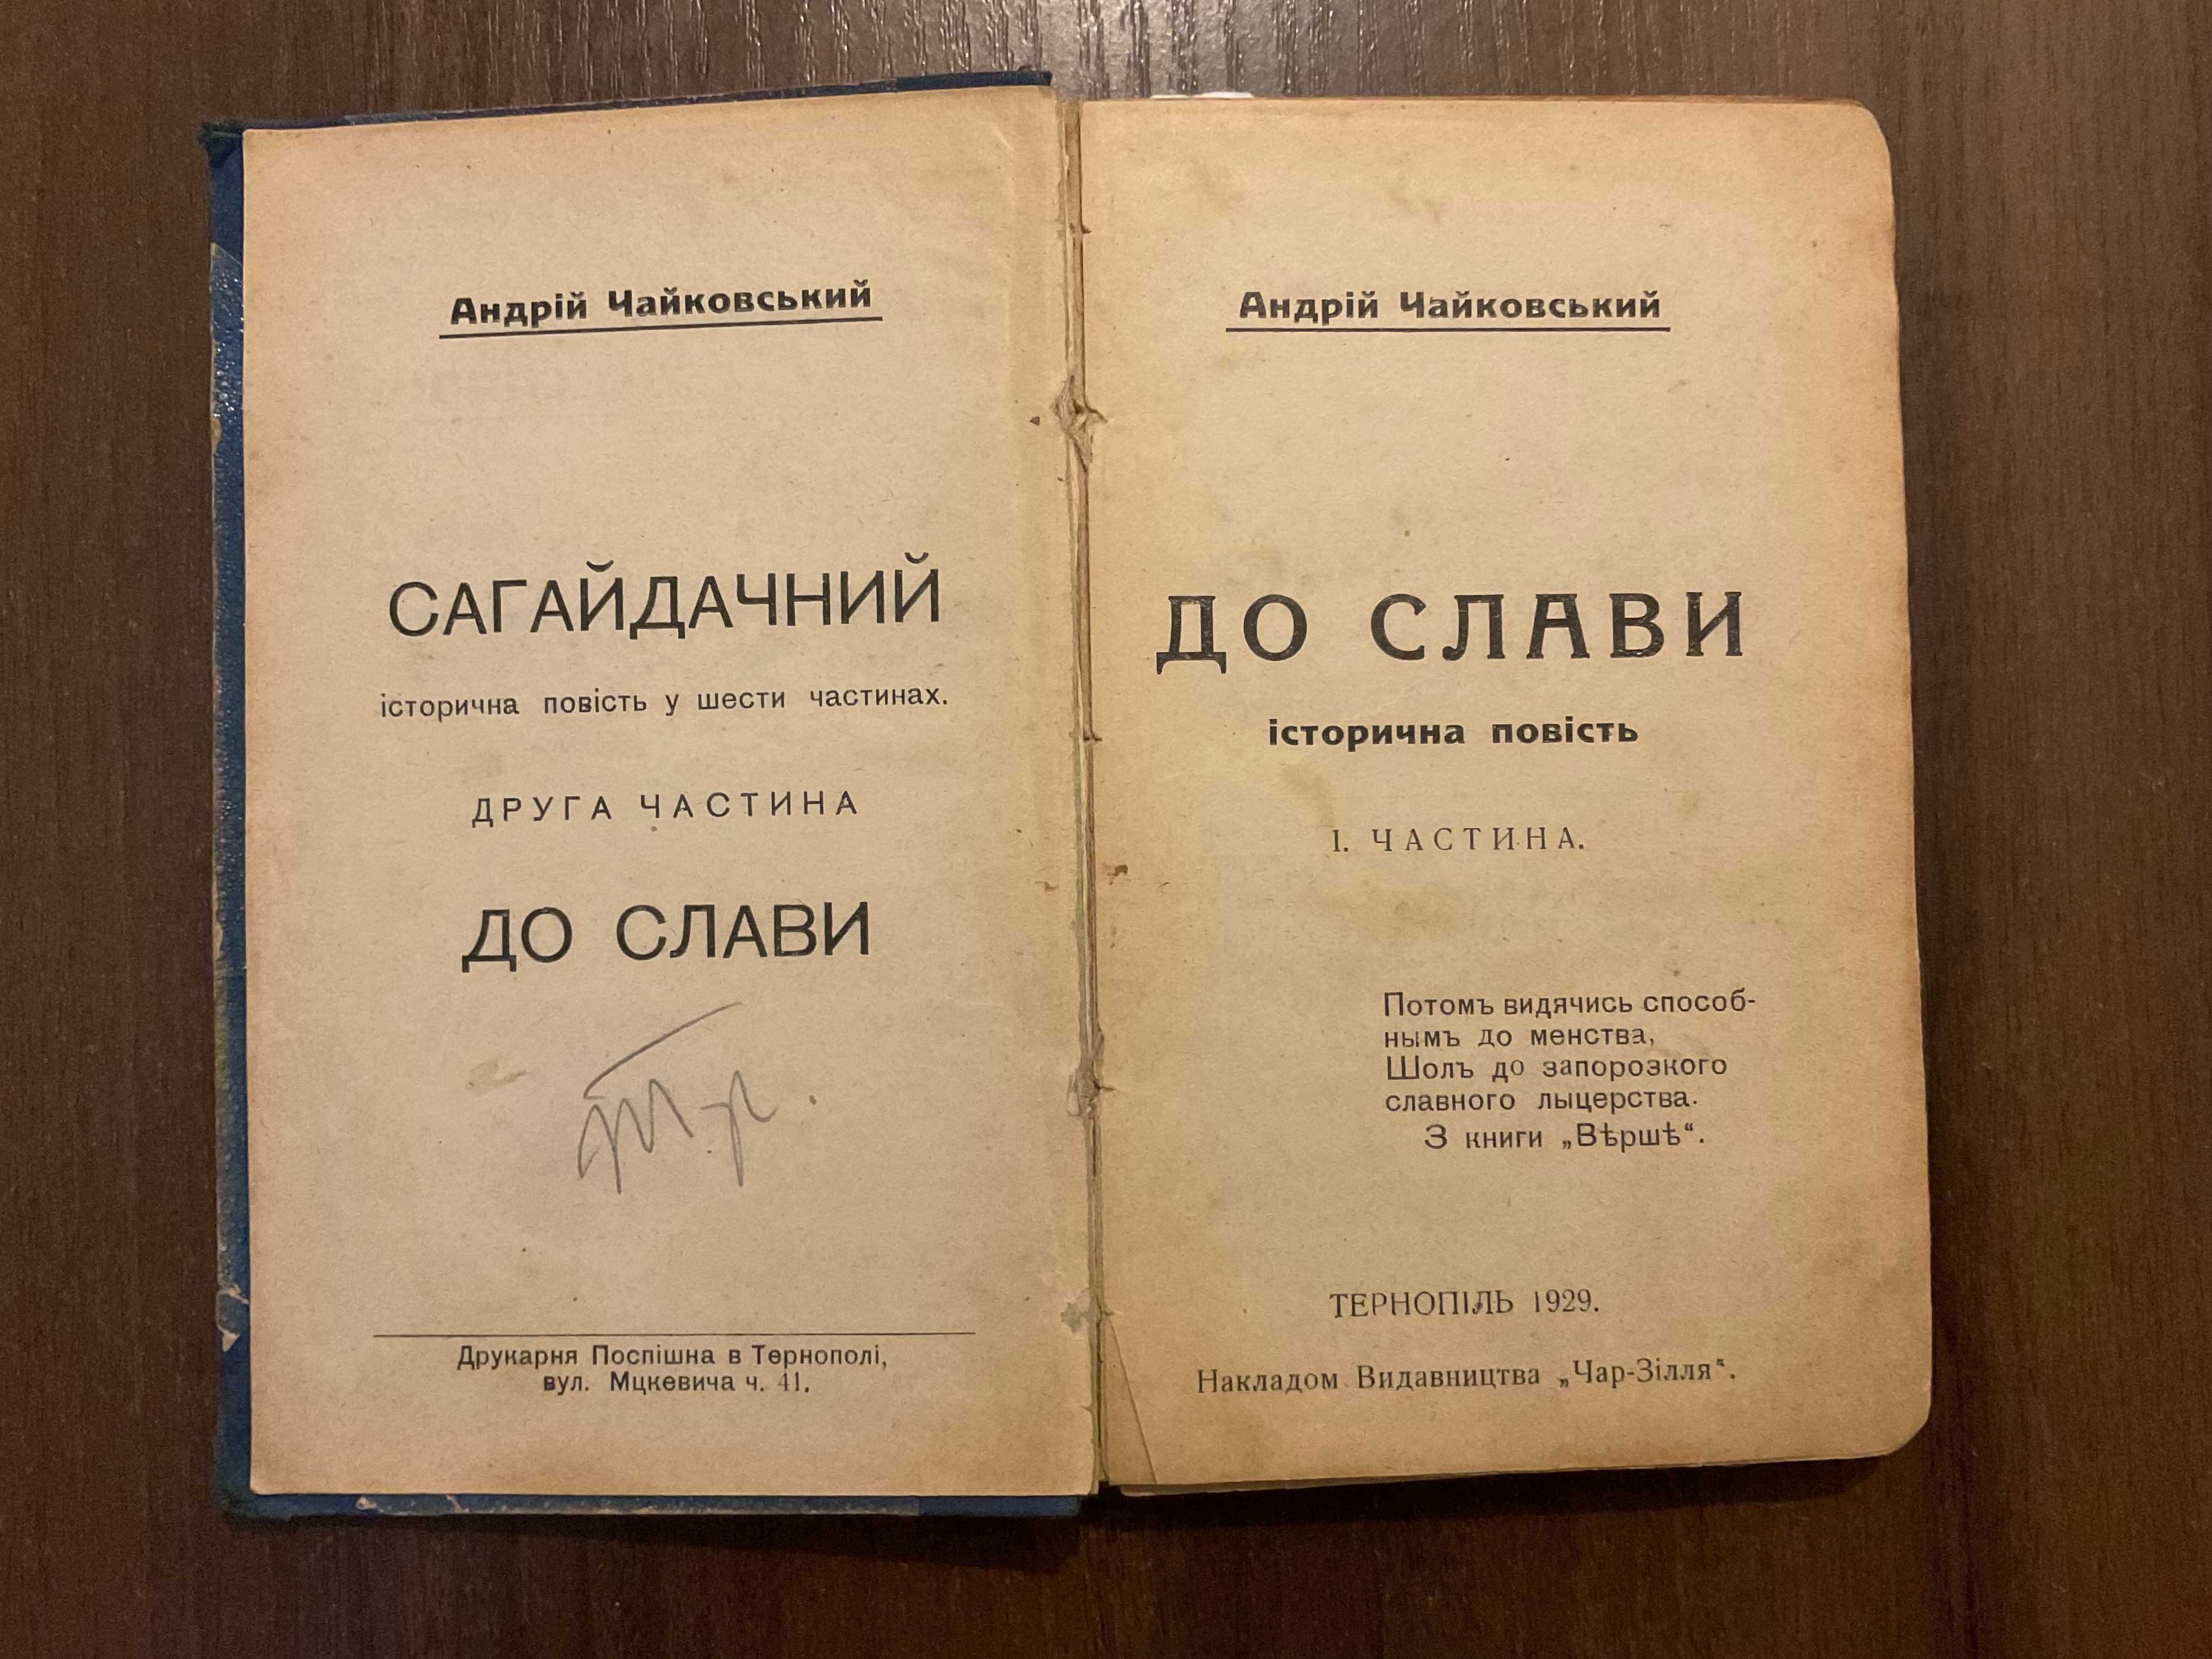 Тернопіль 1929 До слави Історична повість А. Чайковський